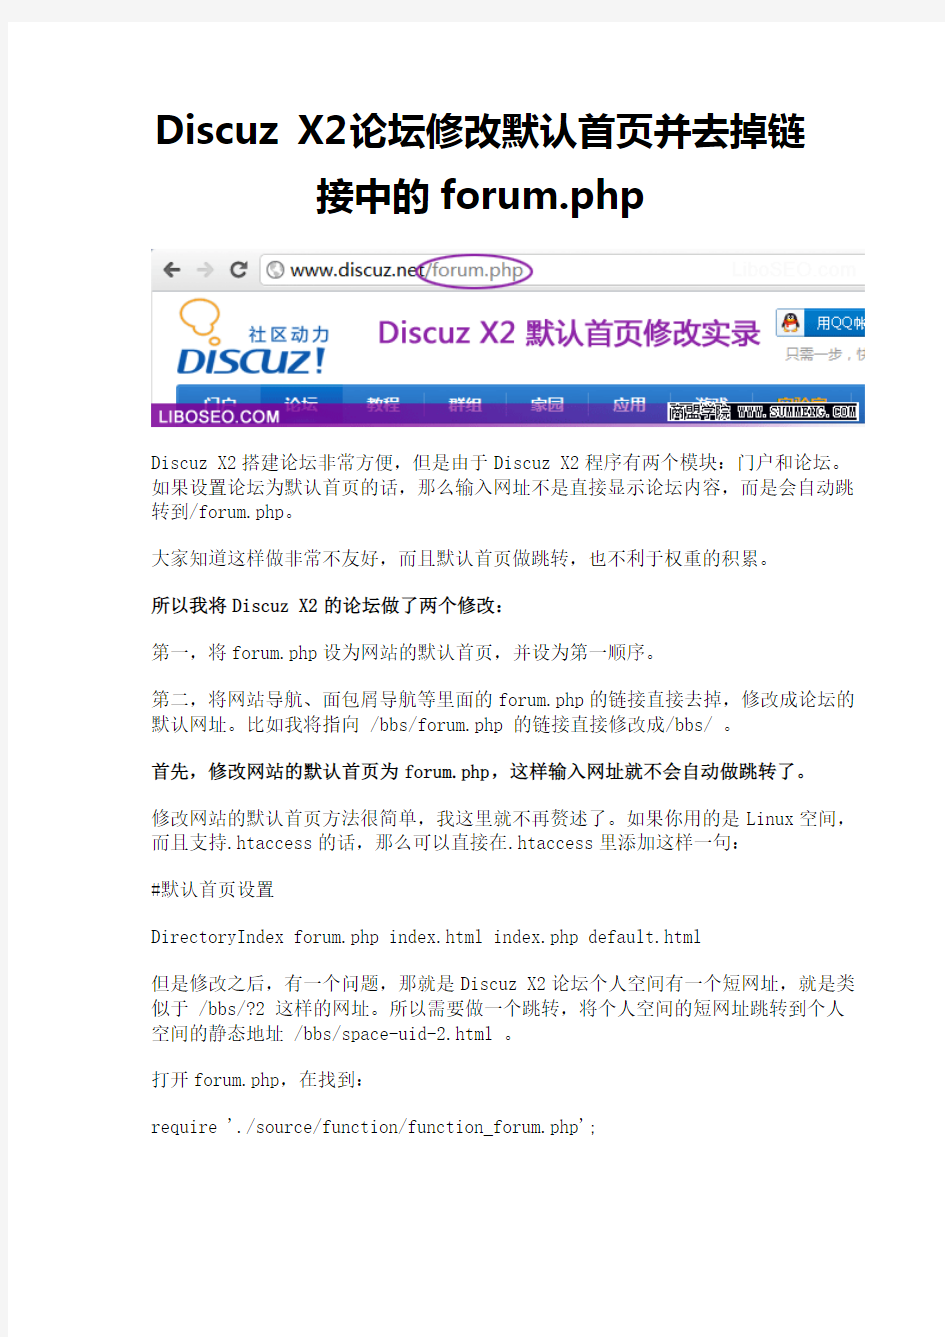 Discuz X2论坛修改默认首页并去掉链接中的forum.php